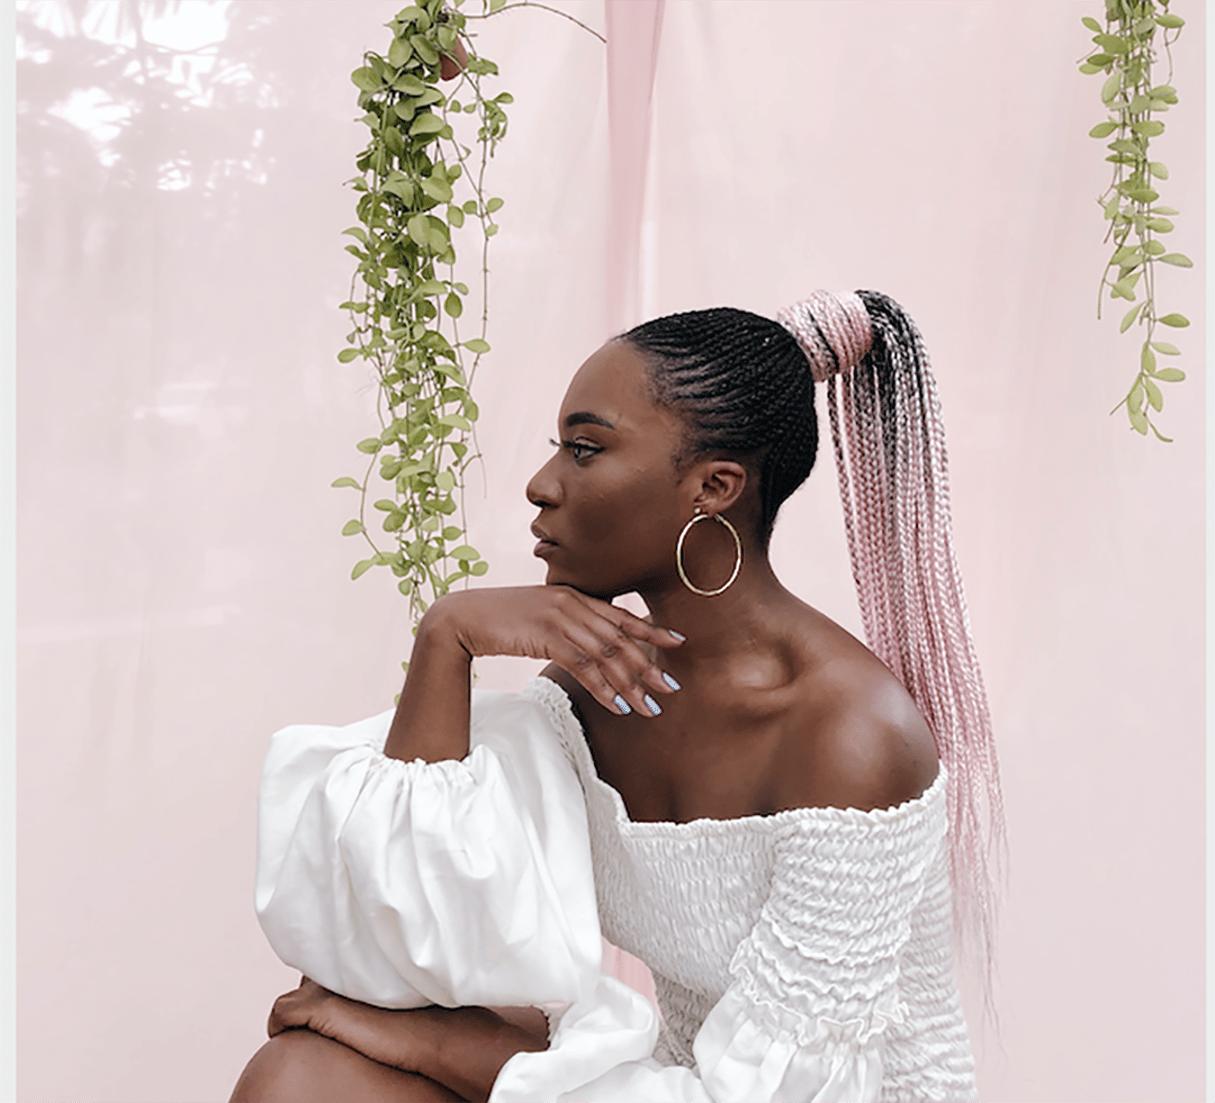 Laëtitia Kandolo est aussi connue, depuis 2014, pour avoir lancé la marque de prêt-à-porter mixte Uchawi, basée à Kinshasa. © Pure vision/Yosuphotography